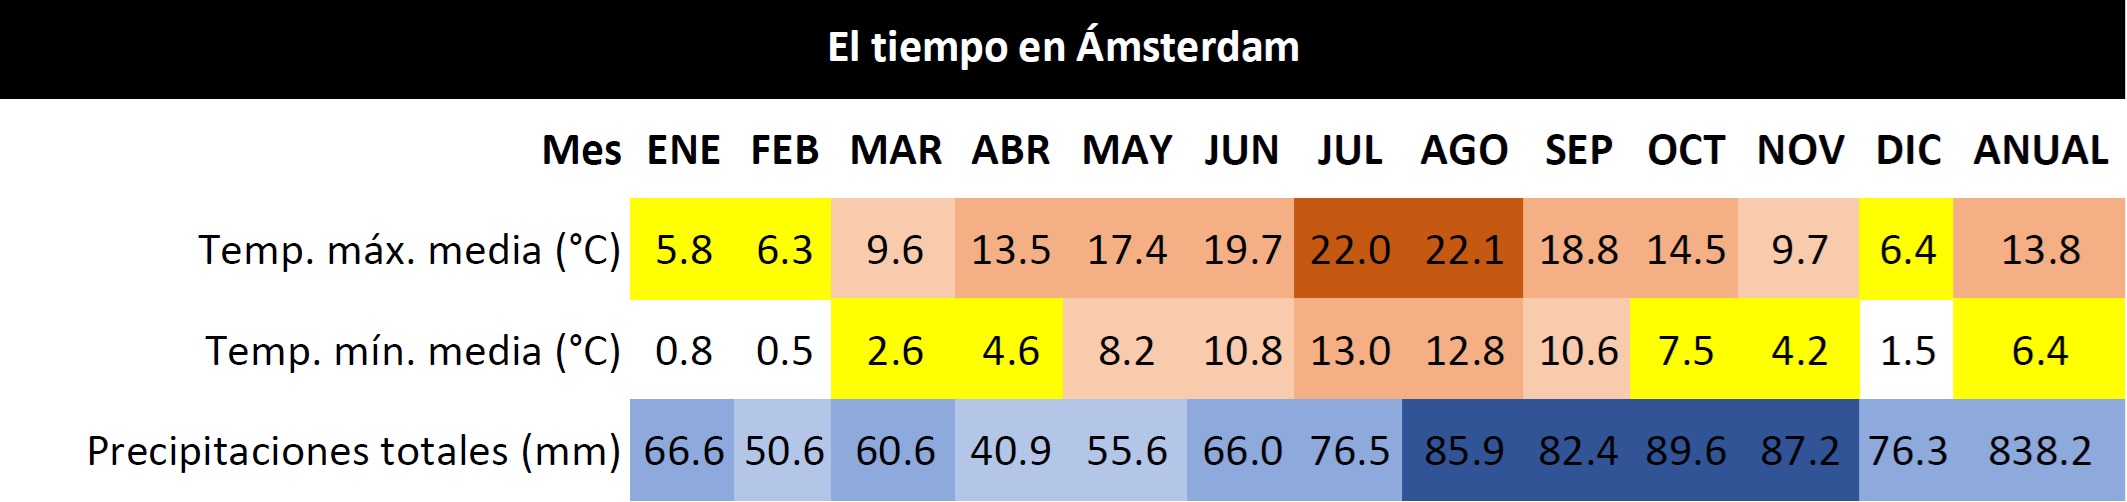 El tiempo en Ámsterdam - Clima